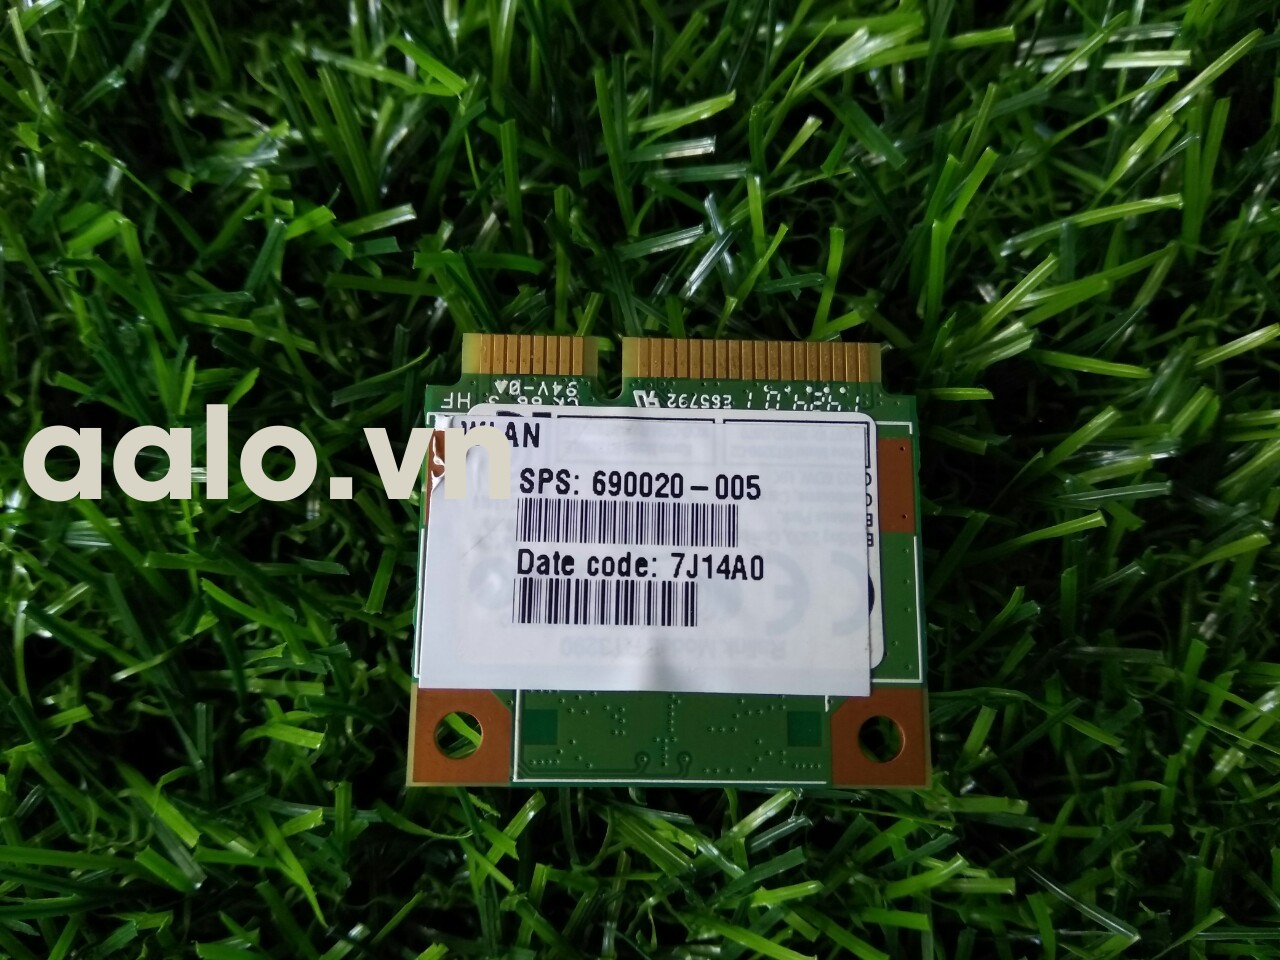 Sony VPCEE45FX PCG-61611L 15.6" OEM WiFi Wireless Card